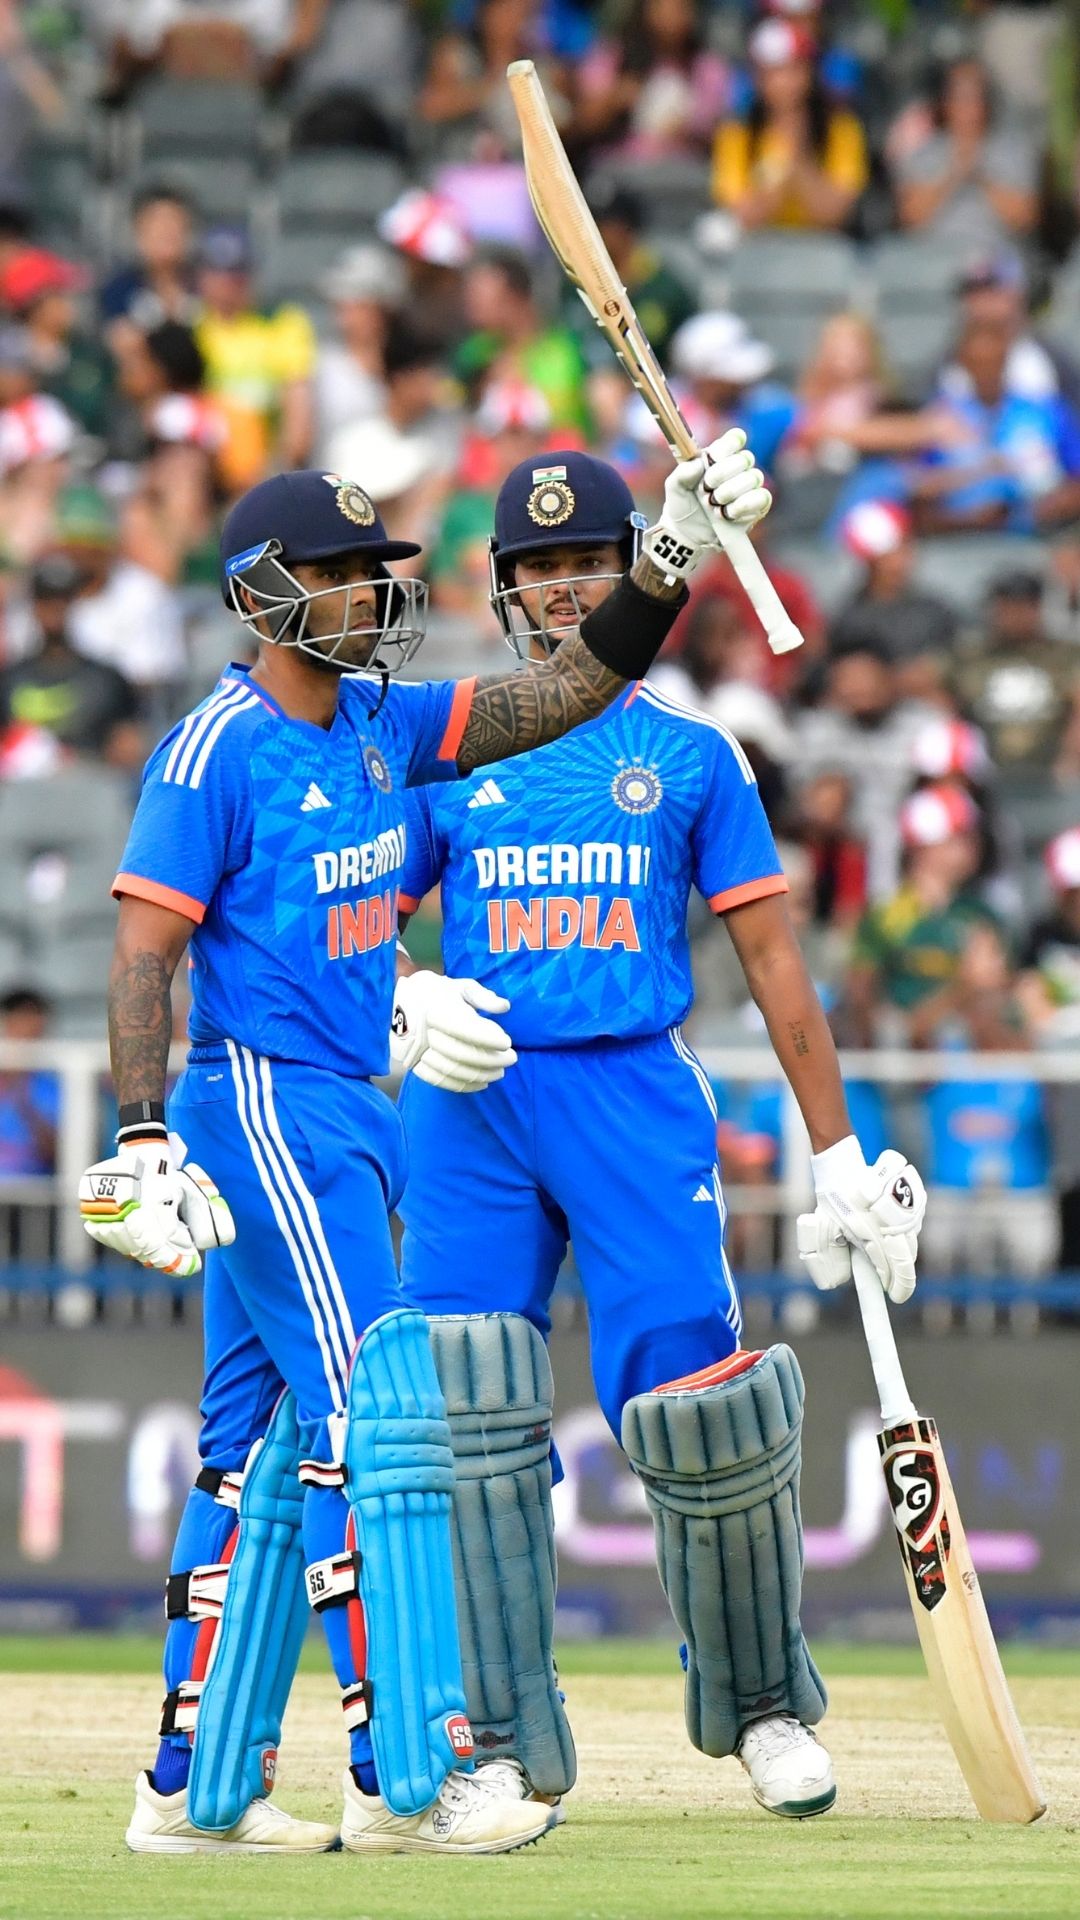 T20 वर्ल्ड कप में चुने गए टीम इंडिया के खिलाड़ियों की ICC रैंकिंग, ये स्टार सबसे आगे 